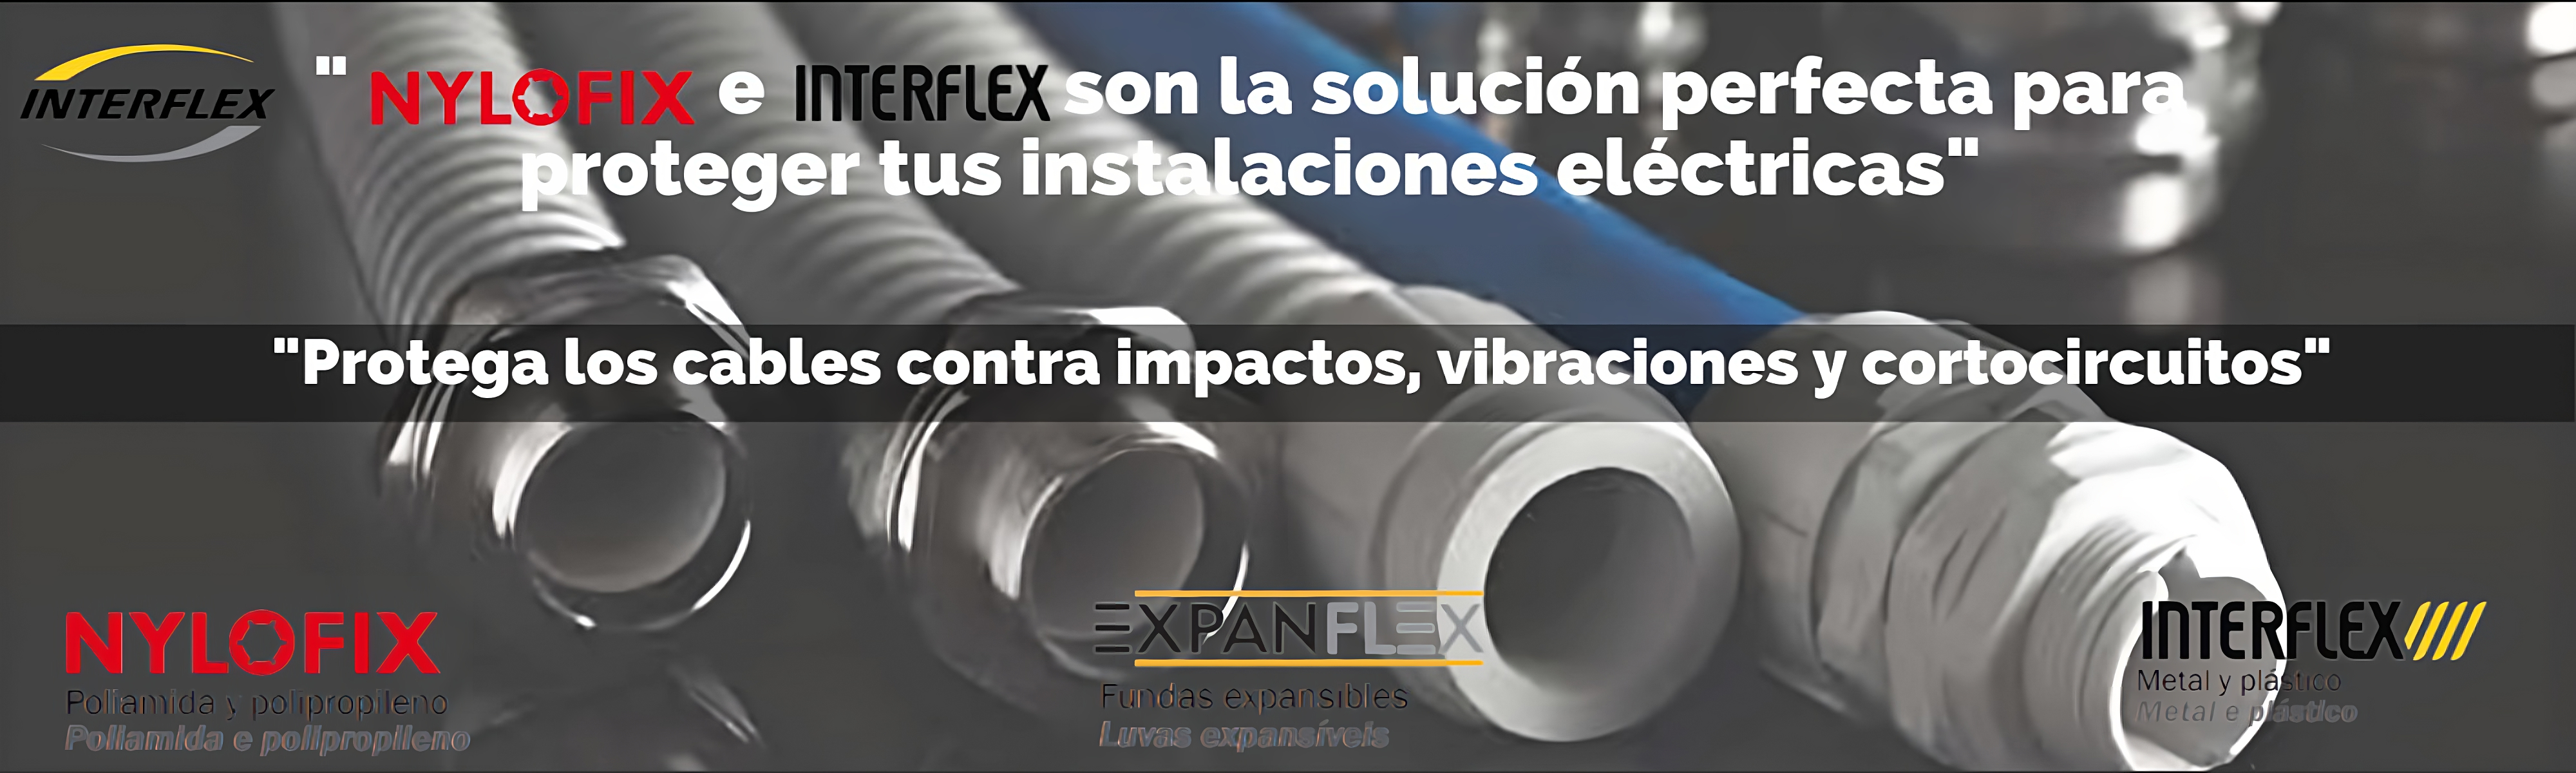 NYLOFIX_e_INTERFLEX_son_la_solución_perfecta_para_proteger_tus_instalaciones_eléctricas-YgiIAlxaI-transformed